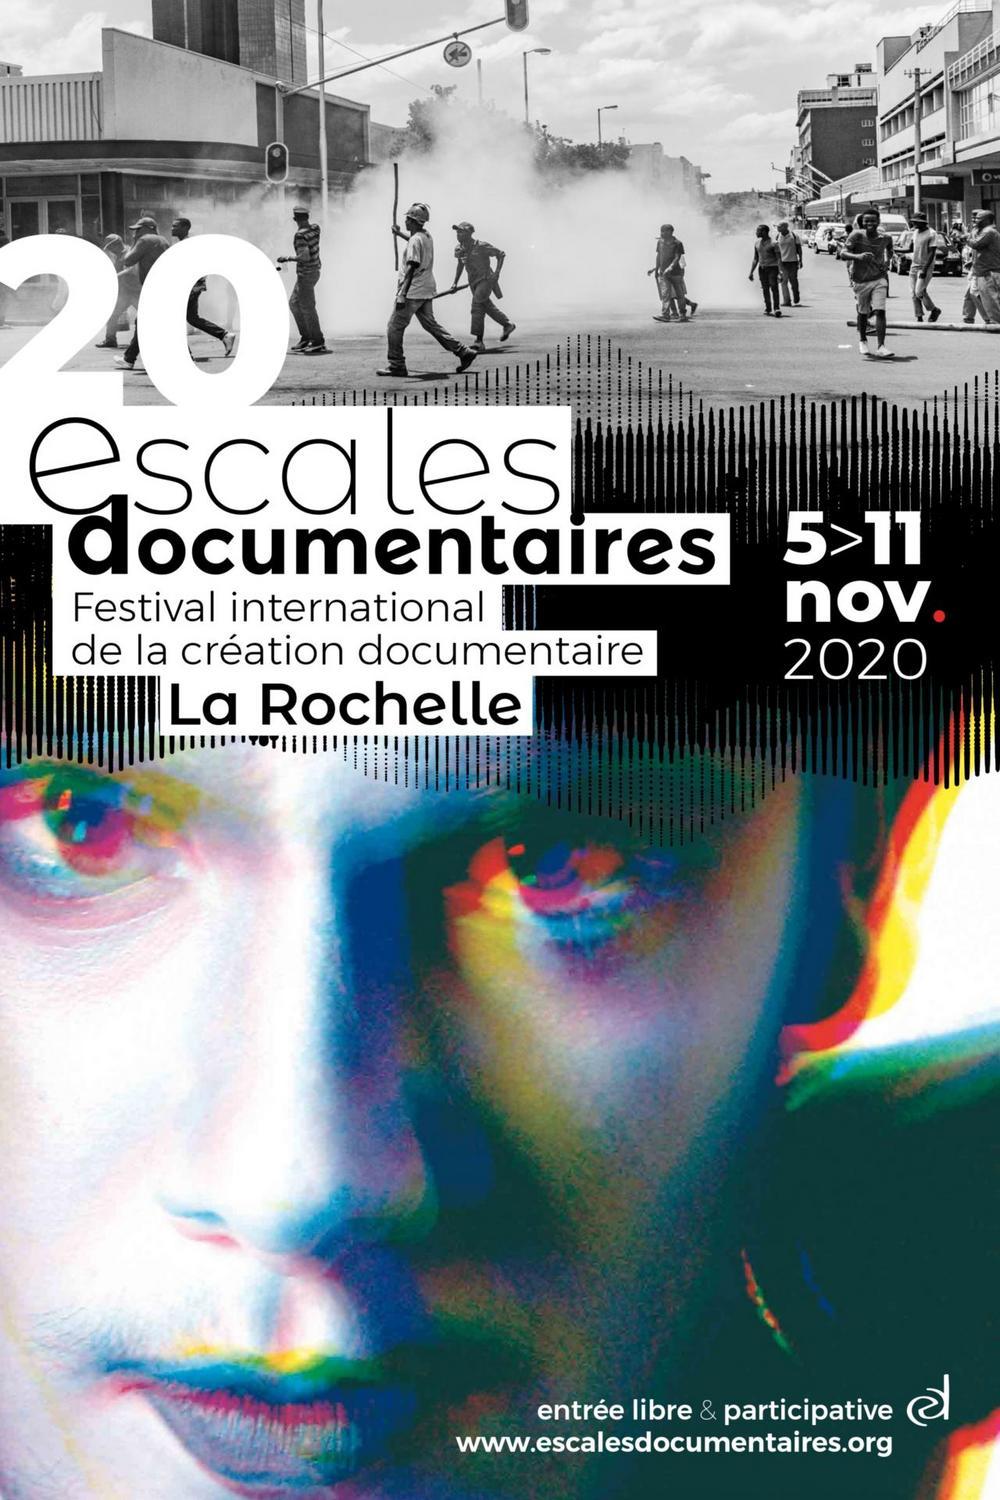 Escales Documentaires festival international de la création